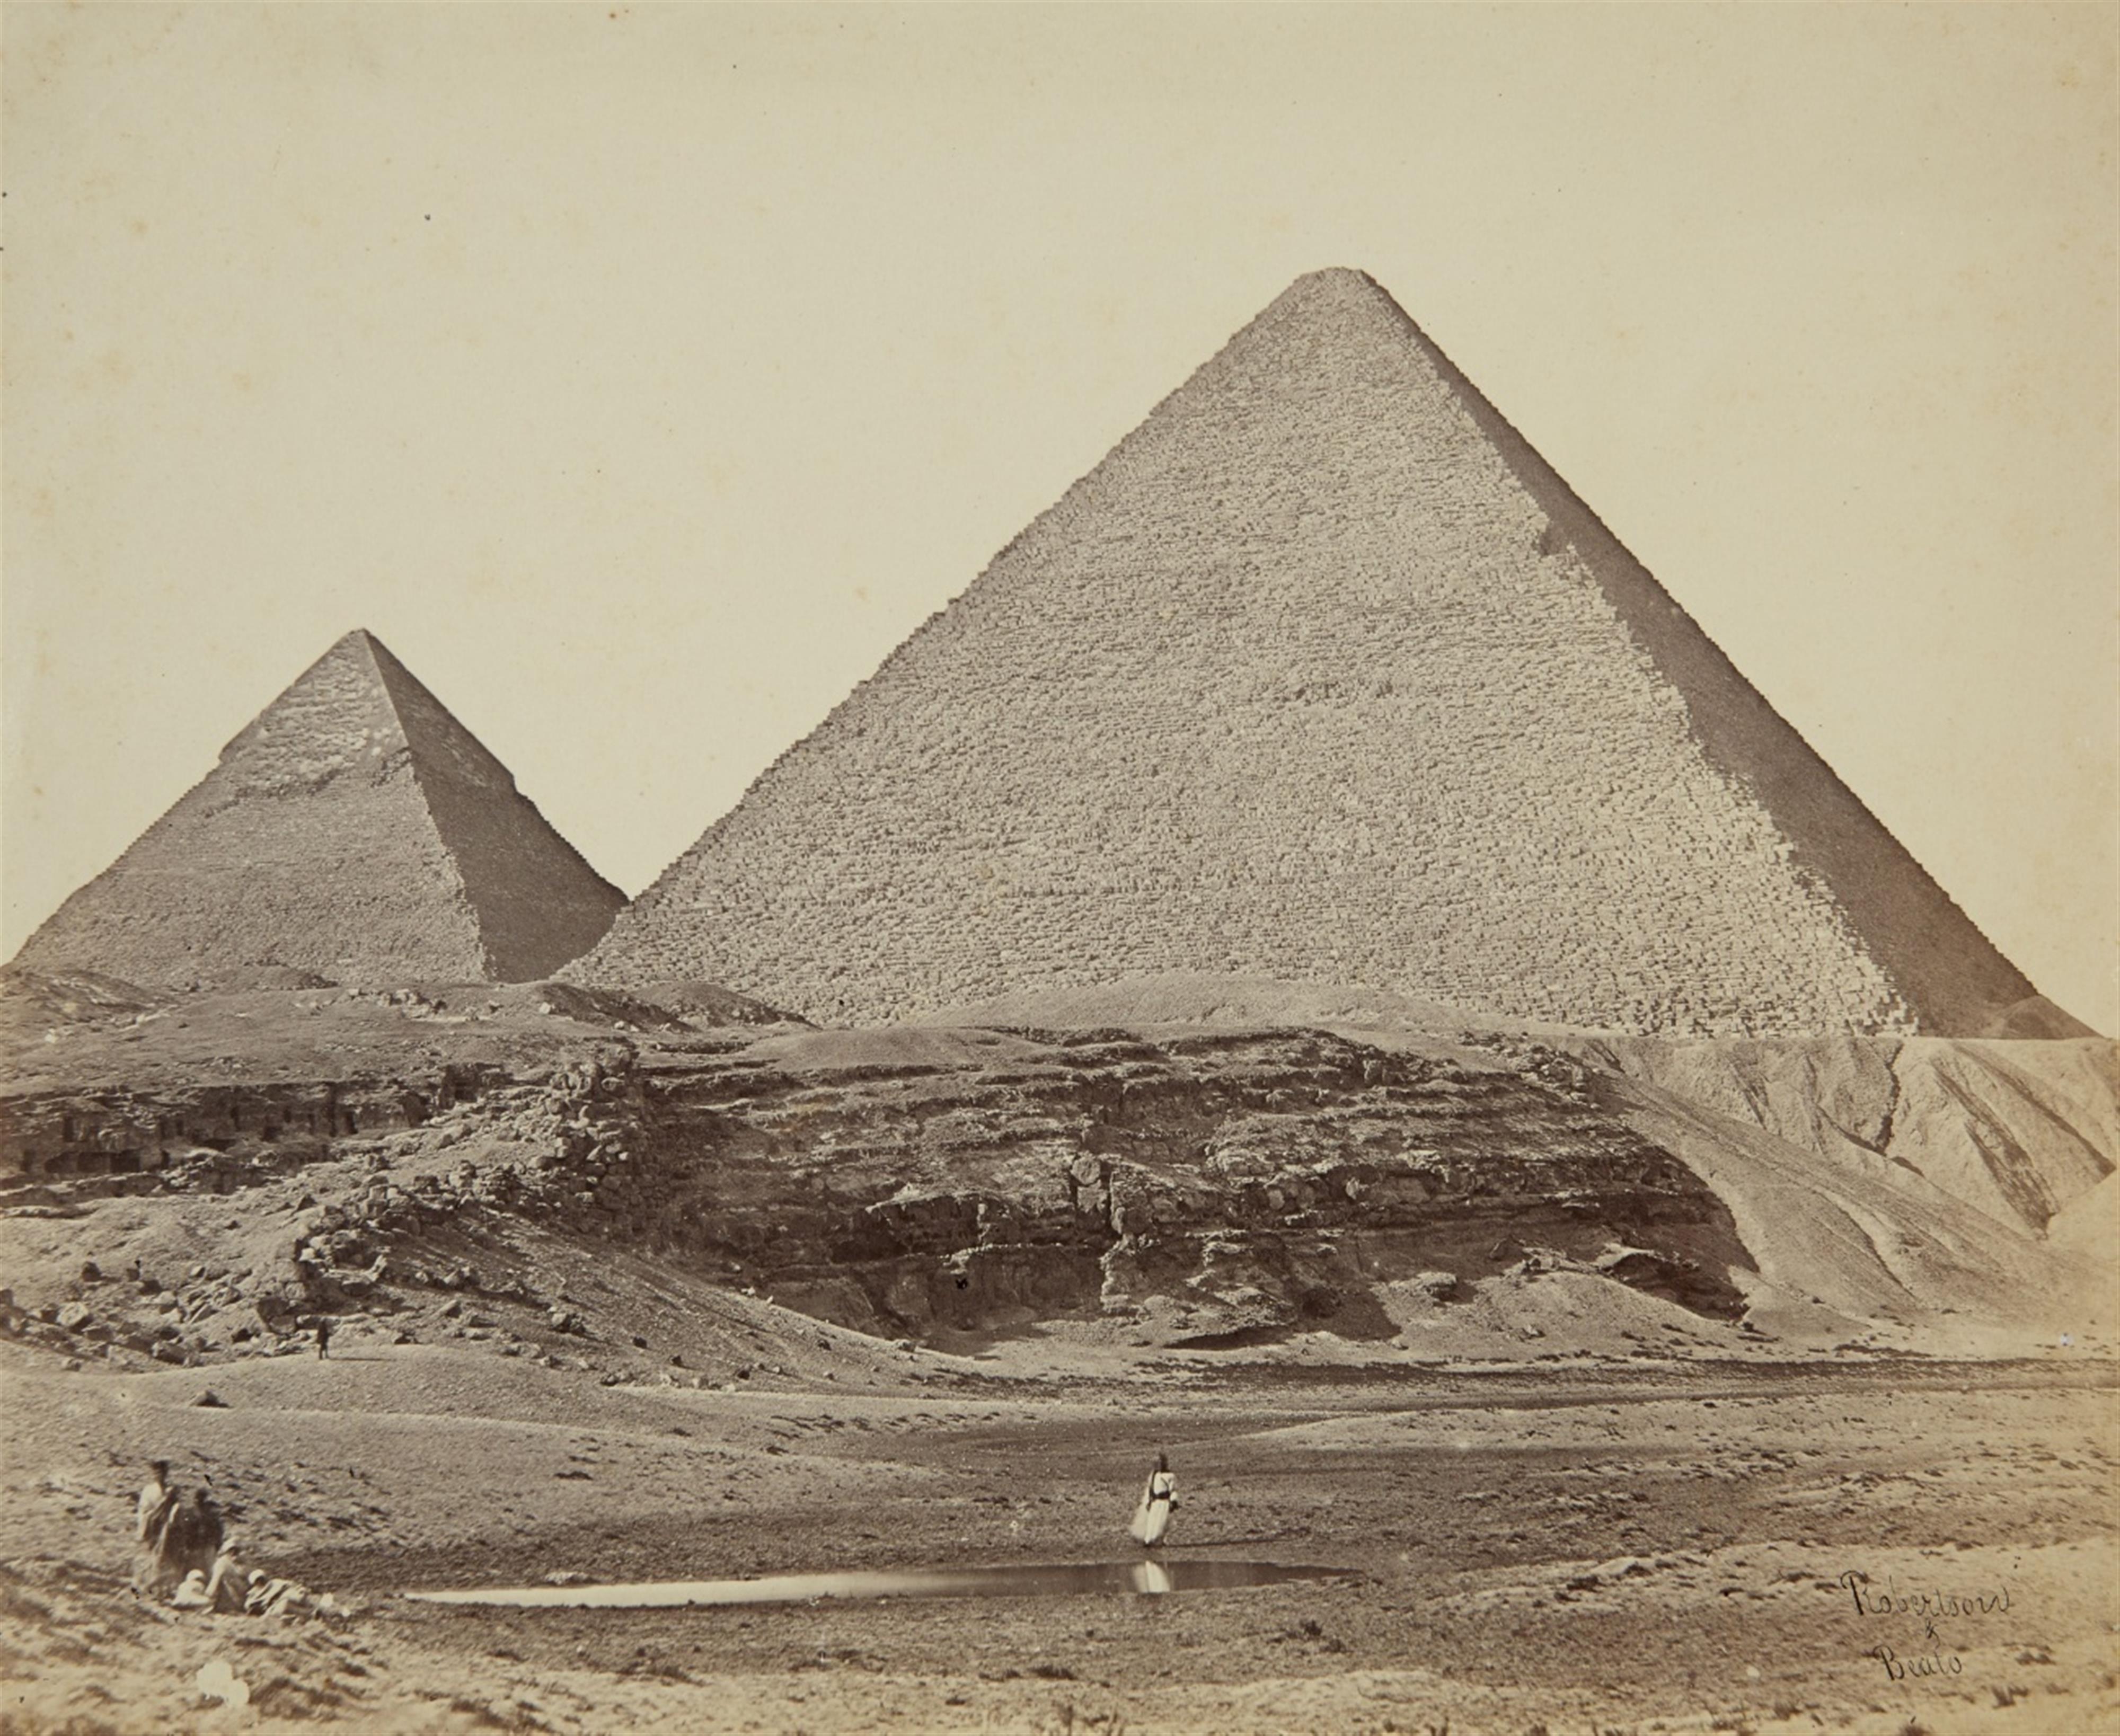 James Robertson
Felice Beato - Pyramiden von Gizeh, Ägypten - image-1